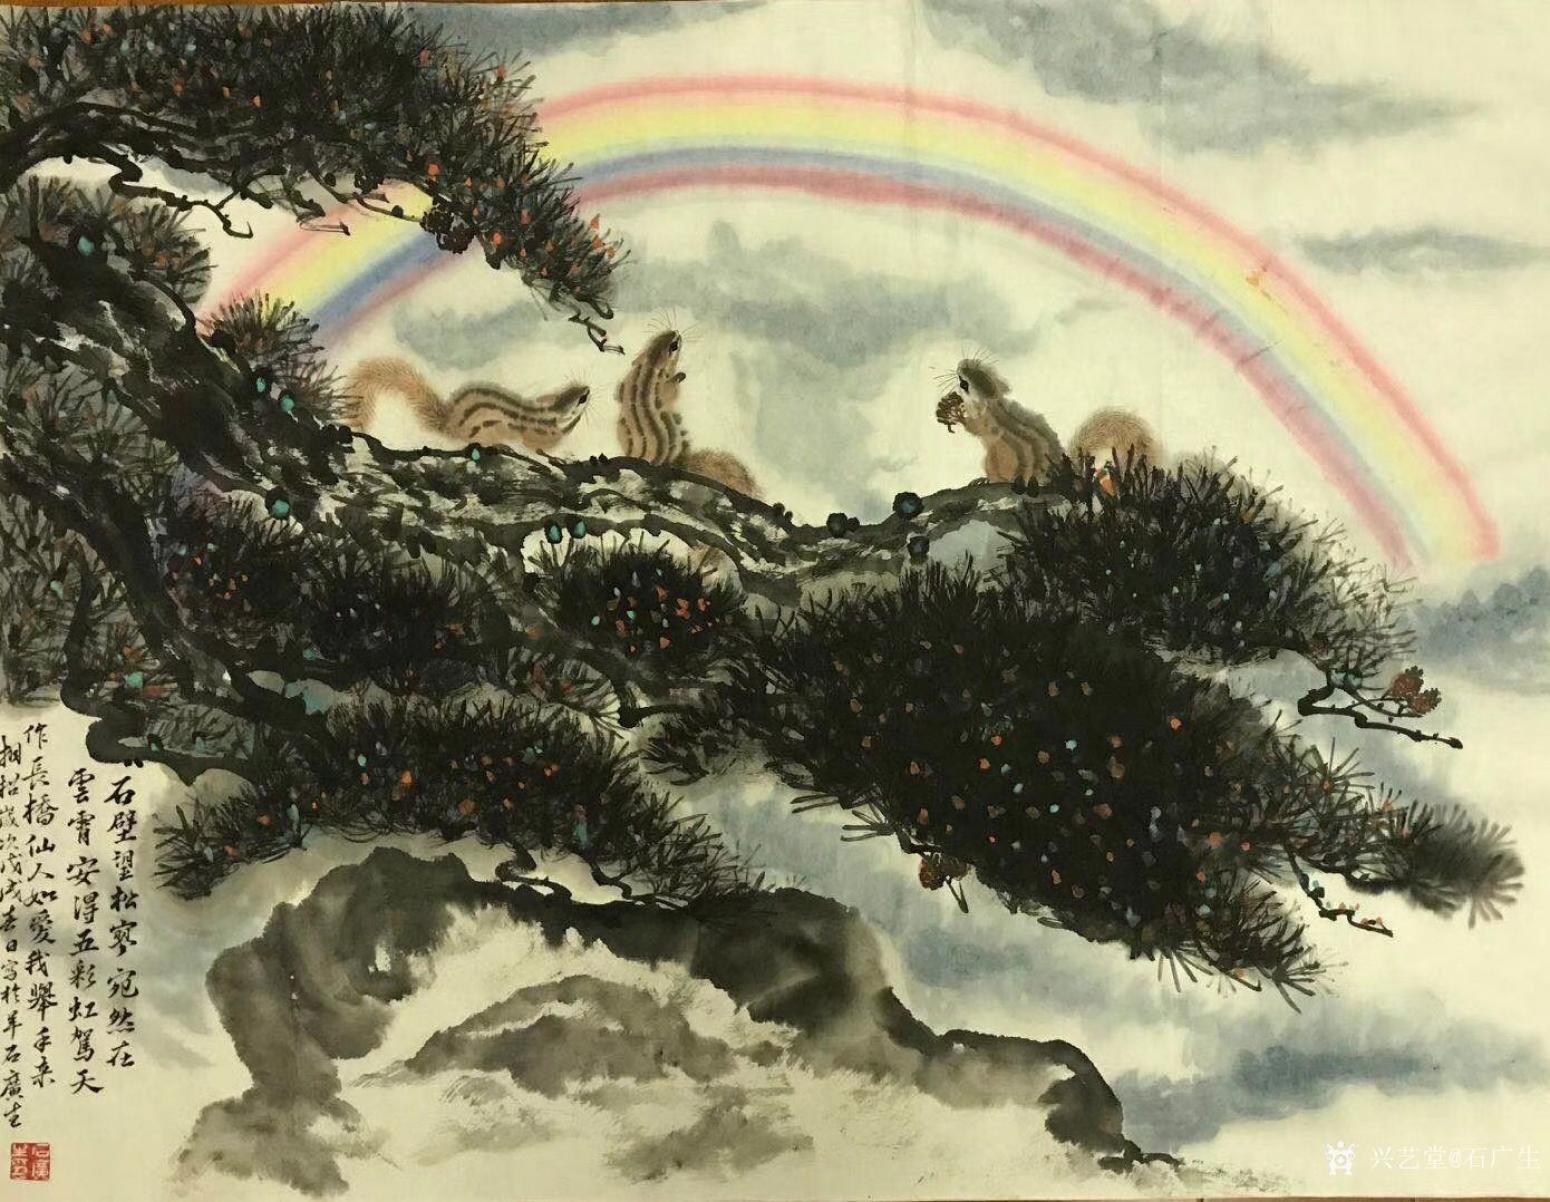 石广生国画作品《彩虹总在风雨后》